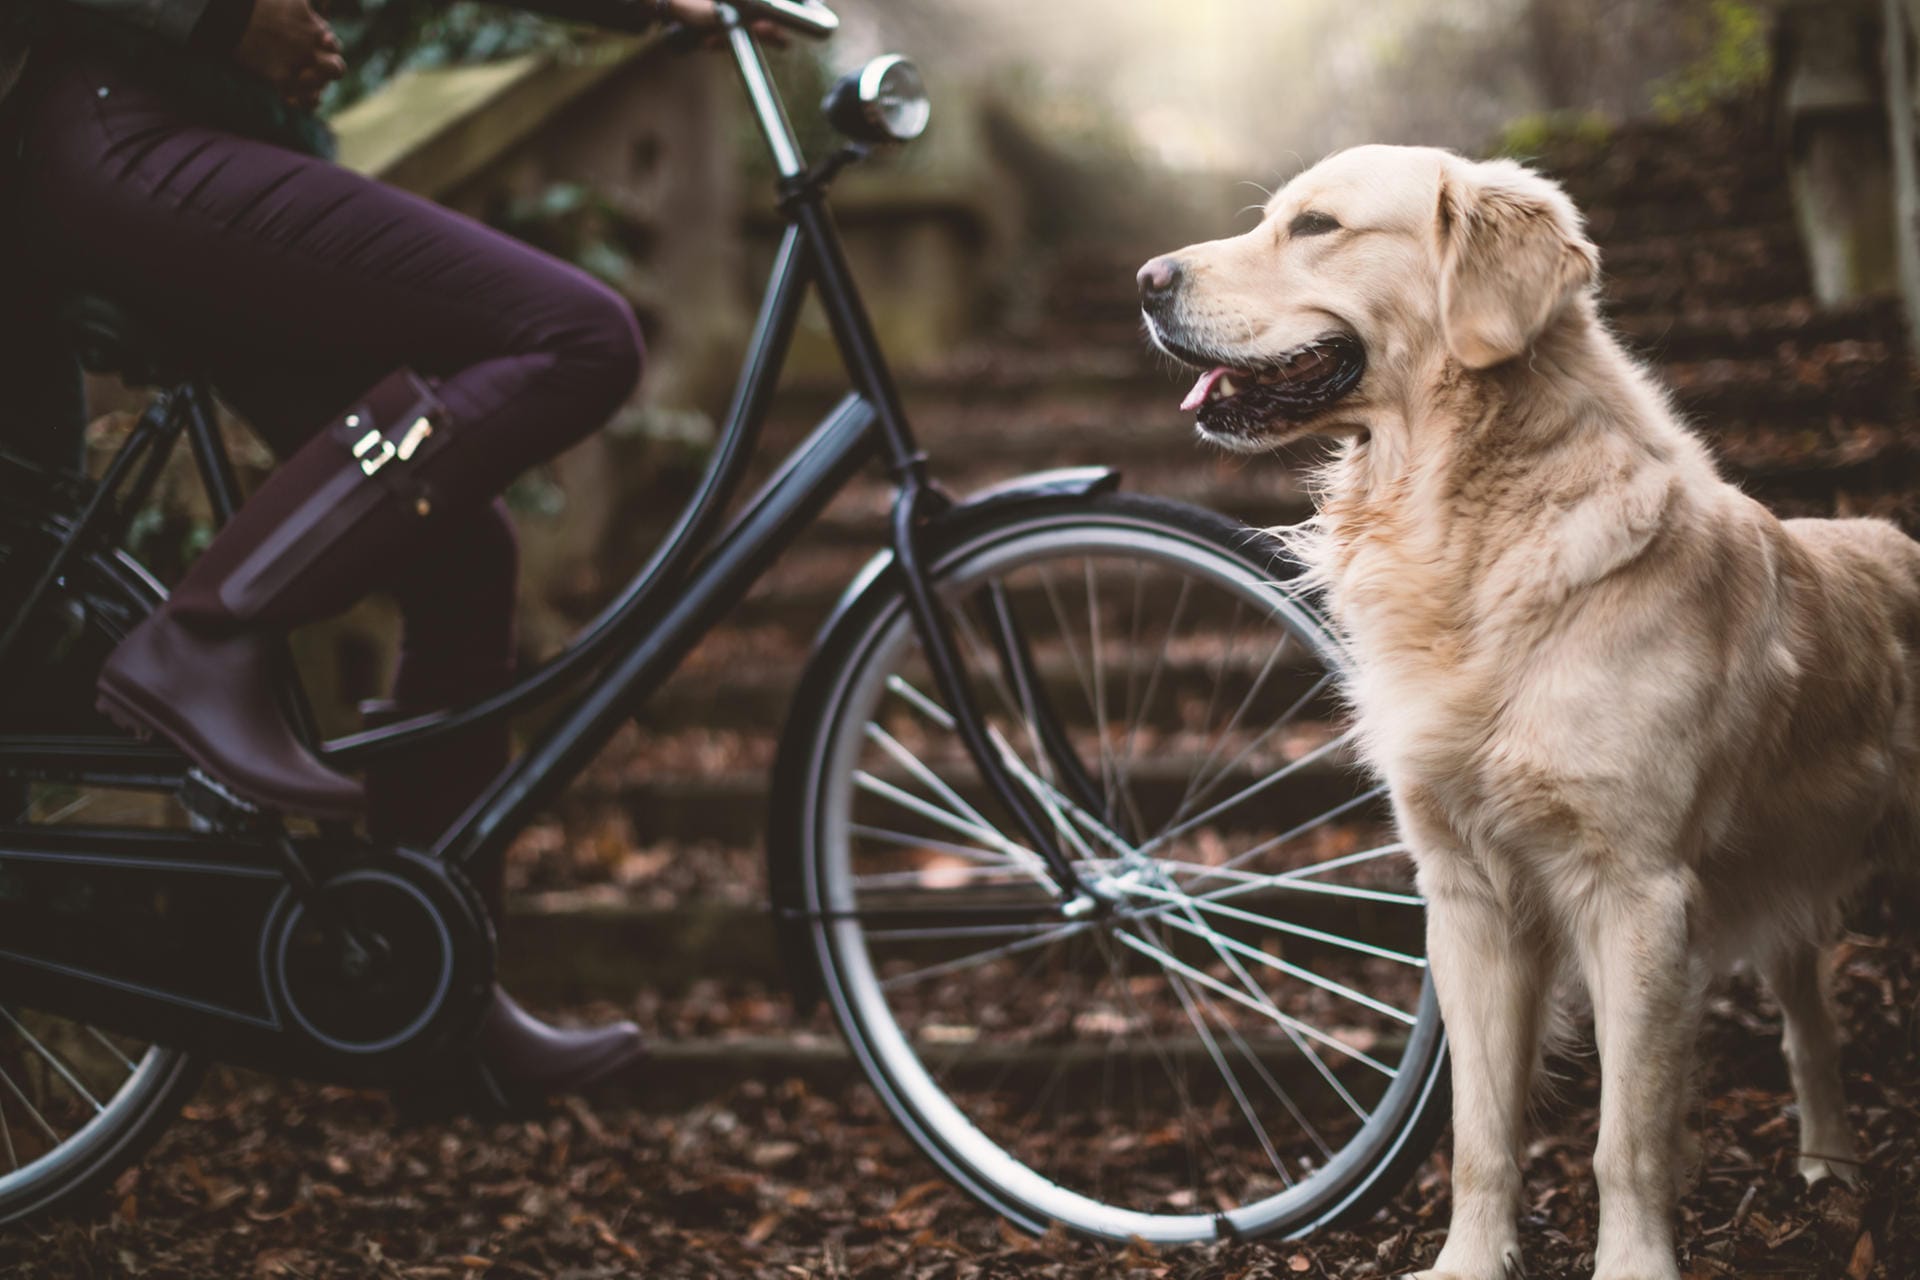 Zu Beginn sollte man den Hund erst einmal mit dem Fahrrad vertraut machen, solange es noch steht. Hat er das Rad beschnuppert, belohnt man dies mit Lob und Leckerlis. Dann schiebt man das Fahrrad erst einmal. Läuft der Hund willig mit, kann man aufsatteln.